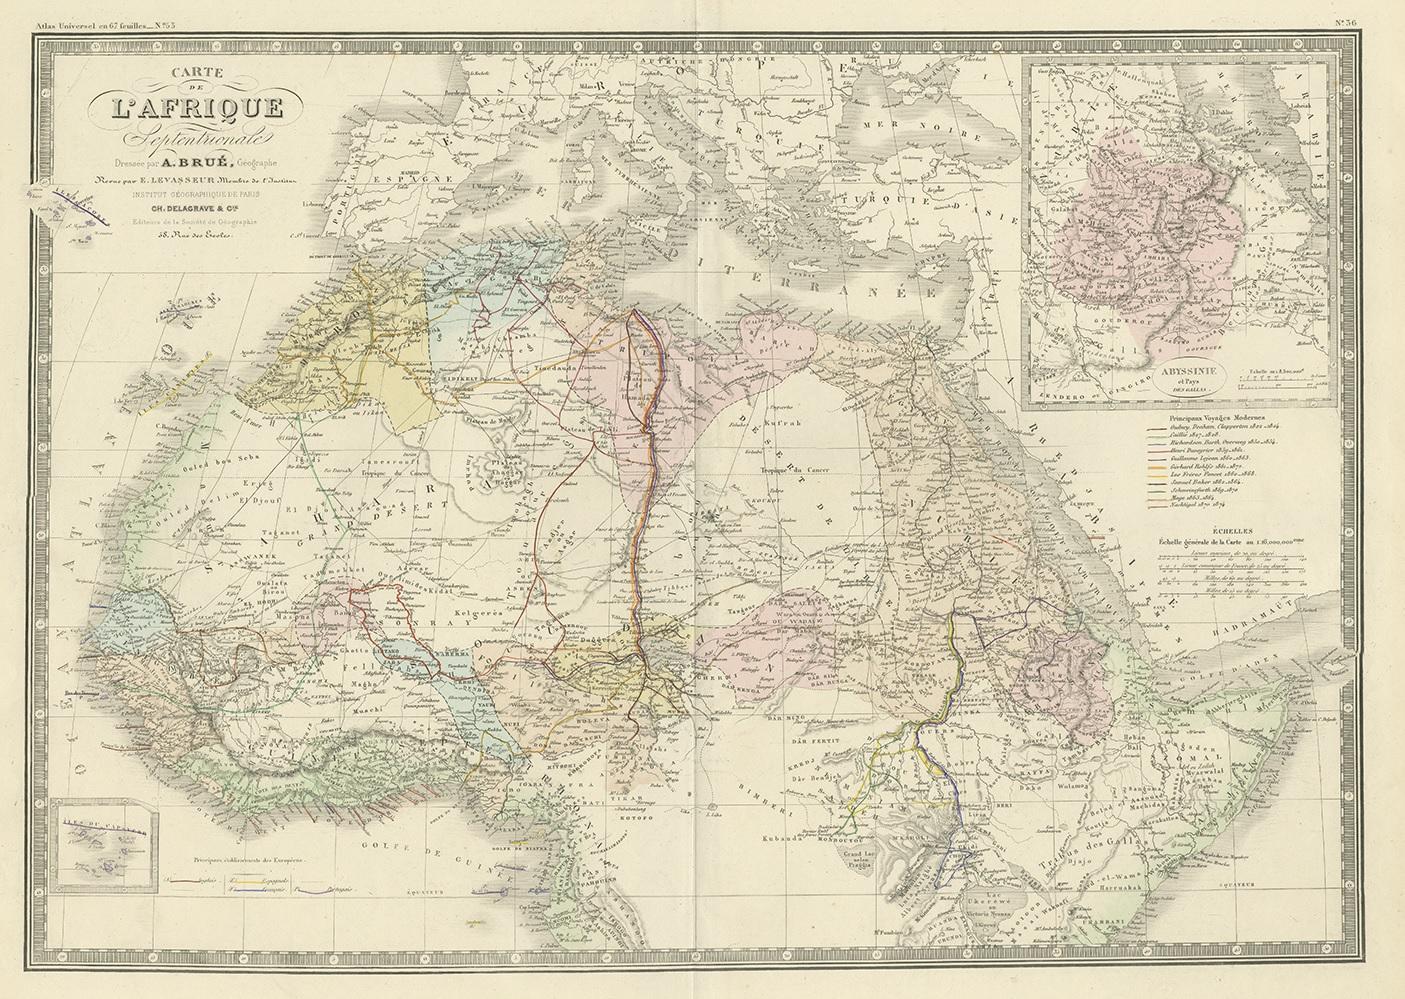 Antique map titled 'Carte de l'Afrique Septentrionale'. Large map of Northern Africa. This map originates from 'Atlas de Géographie Moderne Physique et Politique' by A. Levasseur. Published 1875.